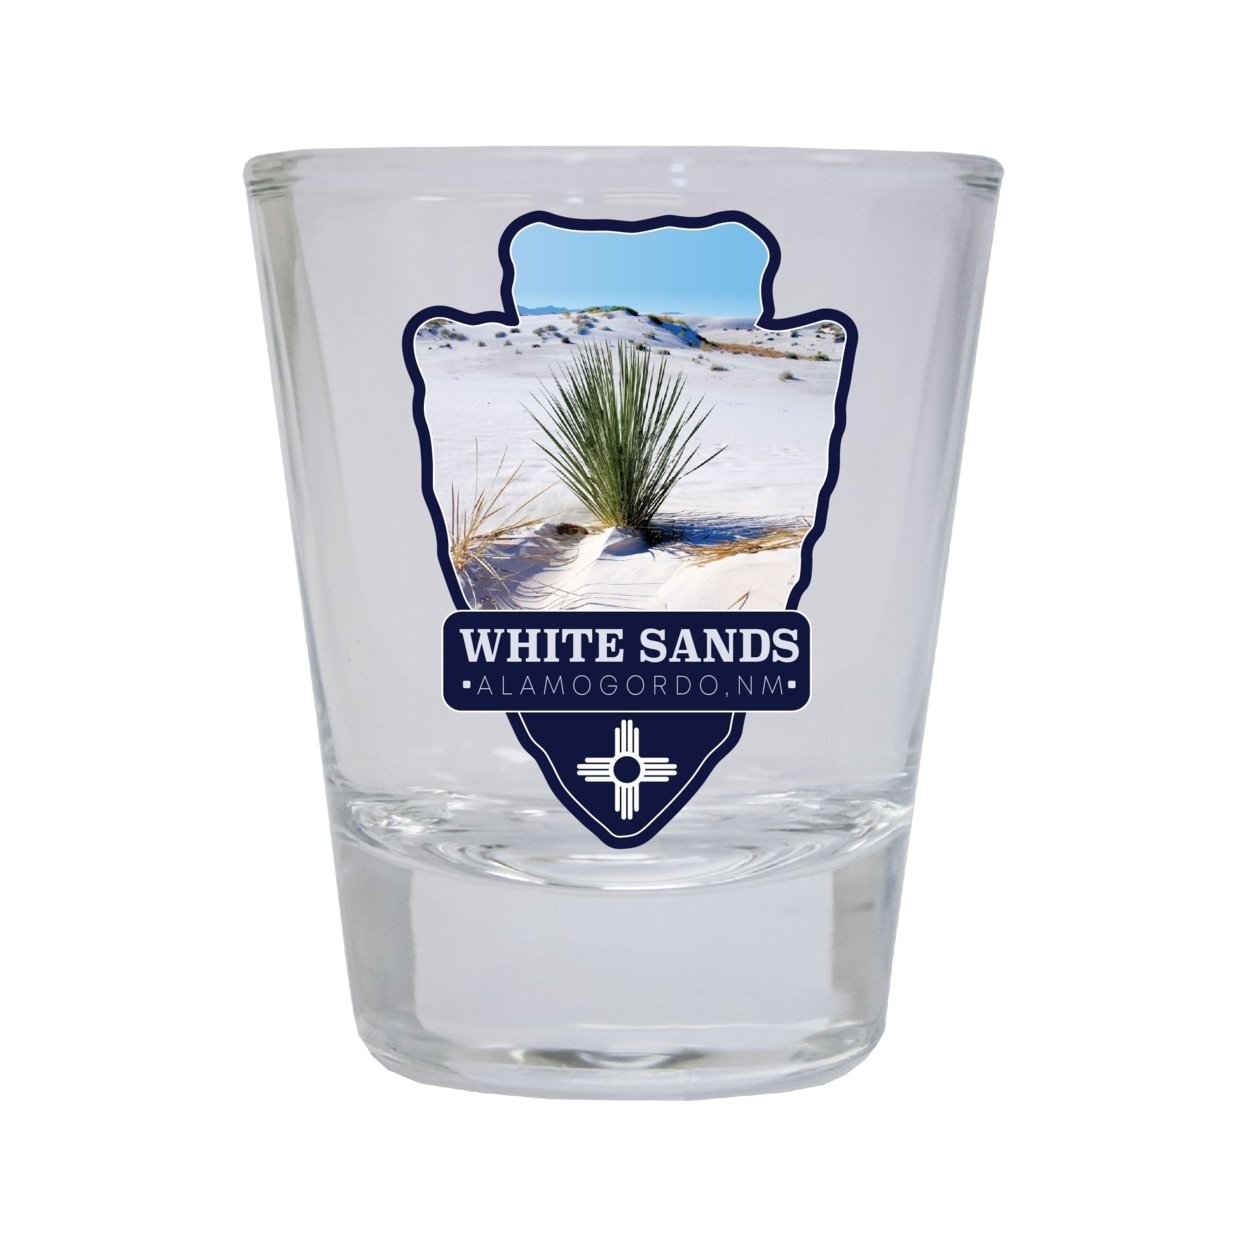 White Sands Alamogordo New Mexico Souvenir Round Shot Glass Choice Of Design - Design 2